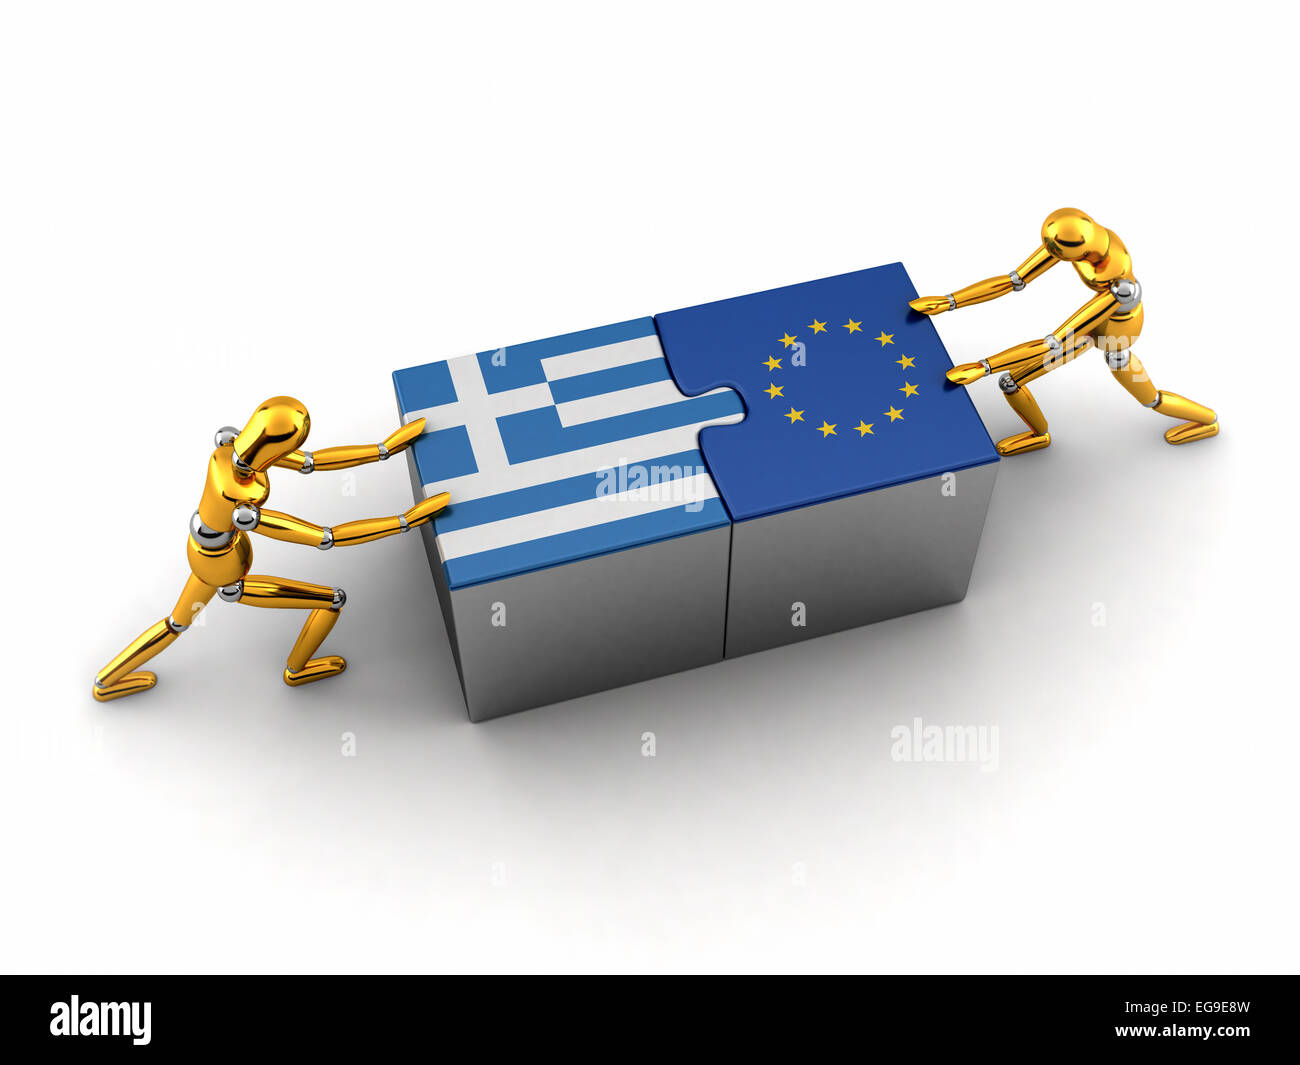 Politische oder finanzielle Konzept von Griechenland zu kämpfen und eine Lösung mit der Europäischen Union zu finden. Stockfoto